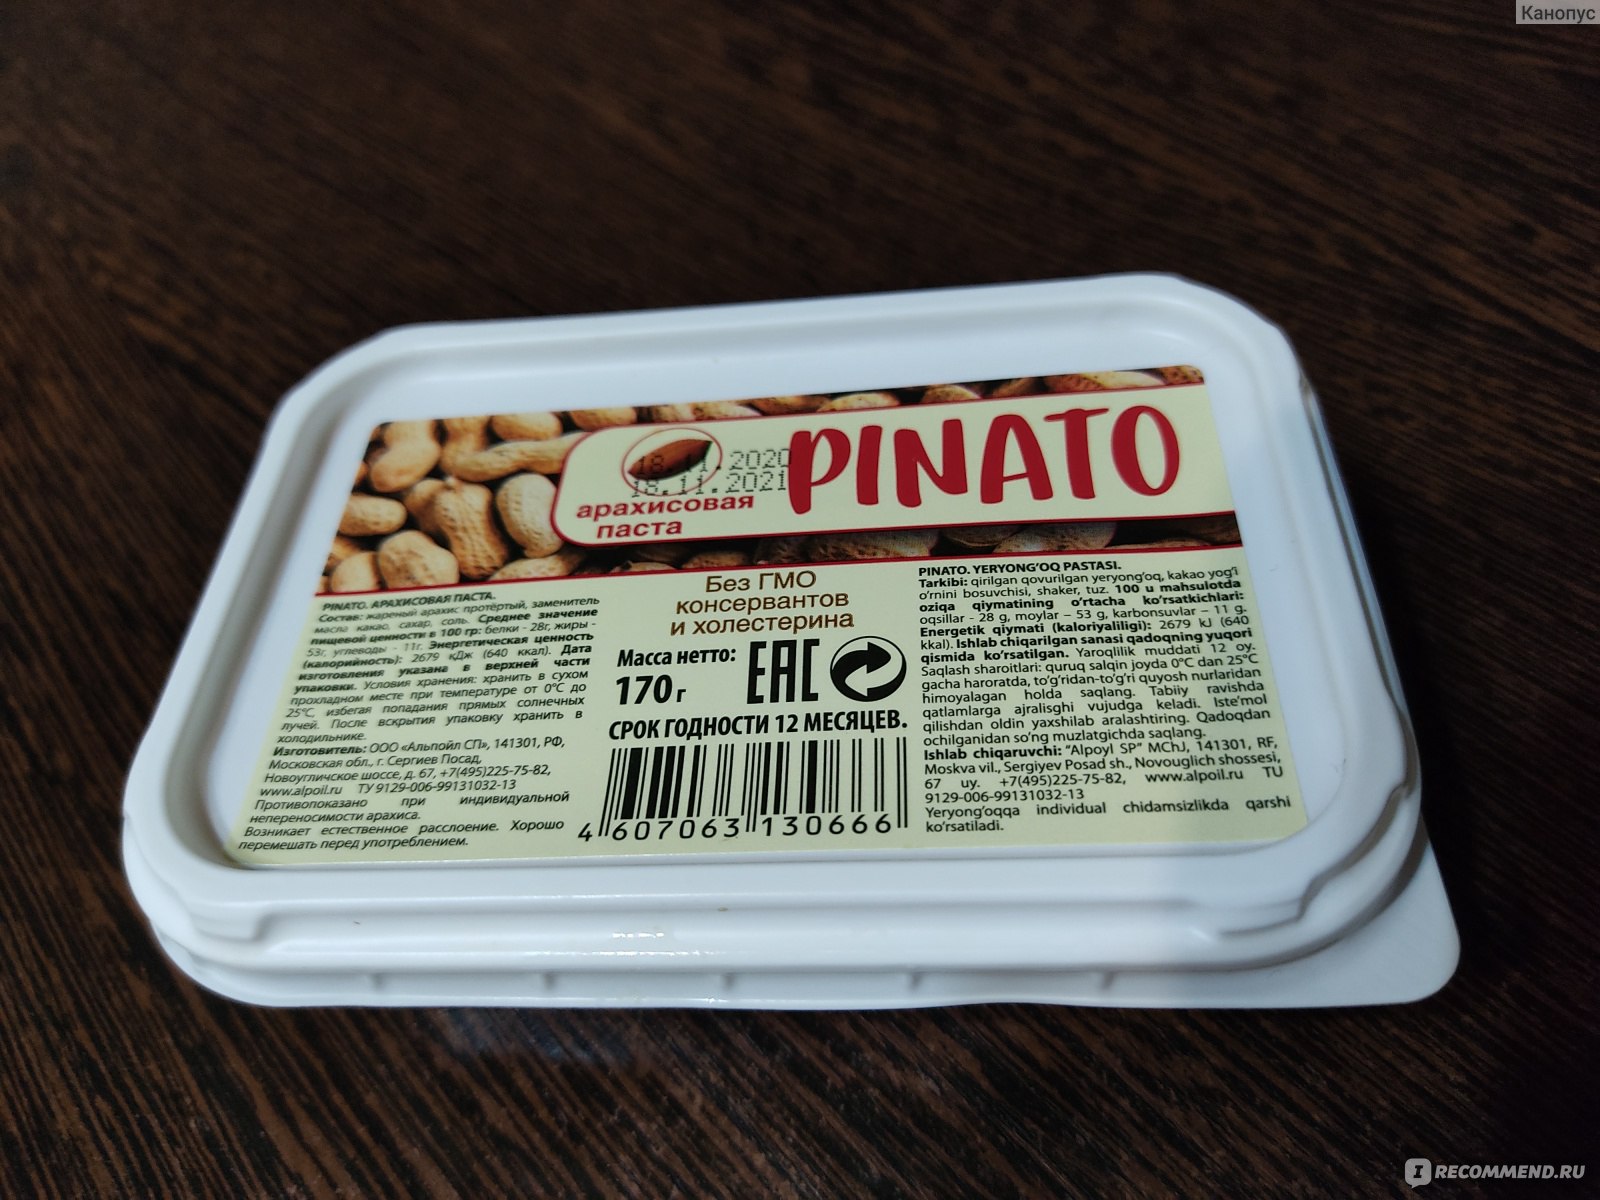 Арахисовая паста. Арахисовая масло Pinato. Ореховая паста Pinato. Арахисовая паста Pinato состав.